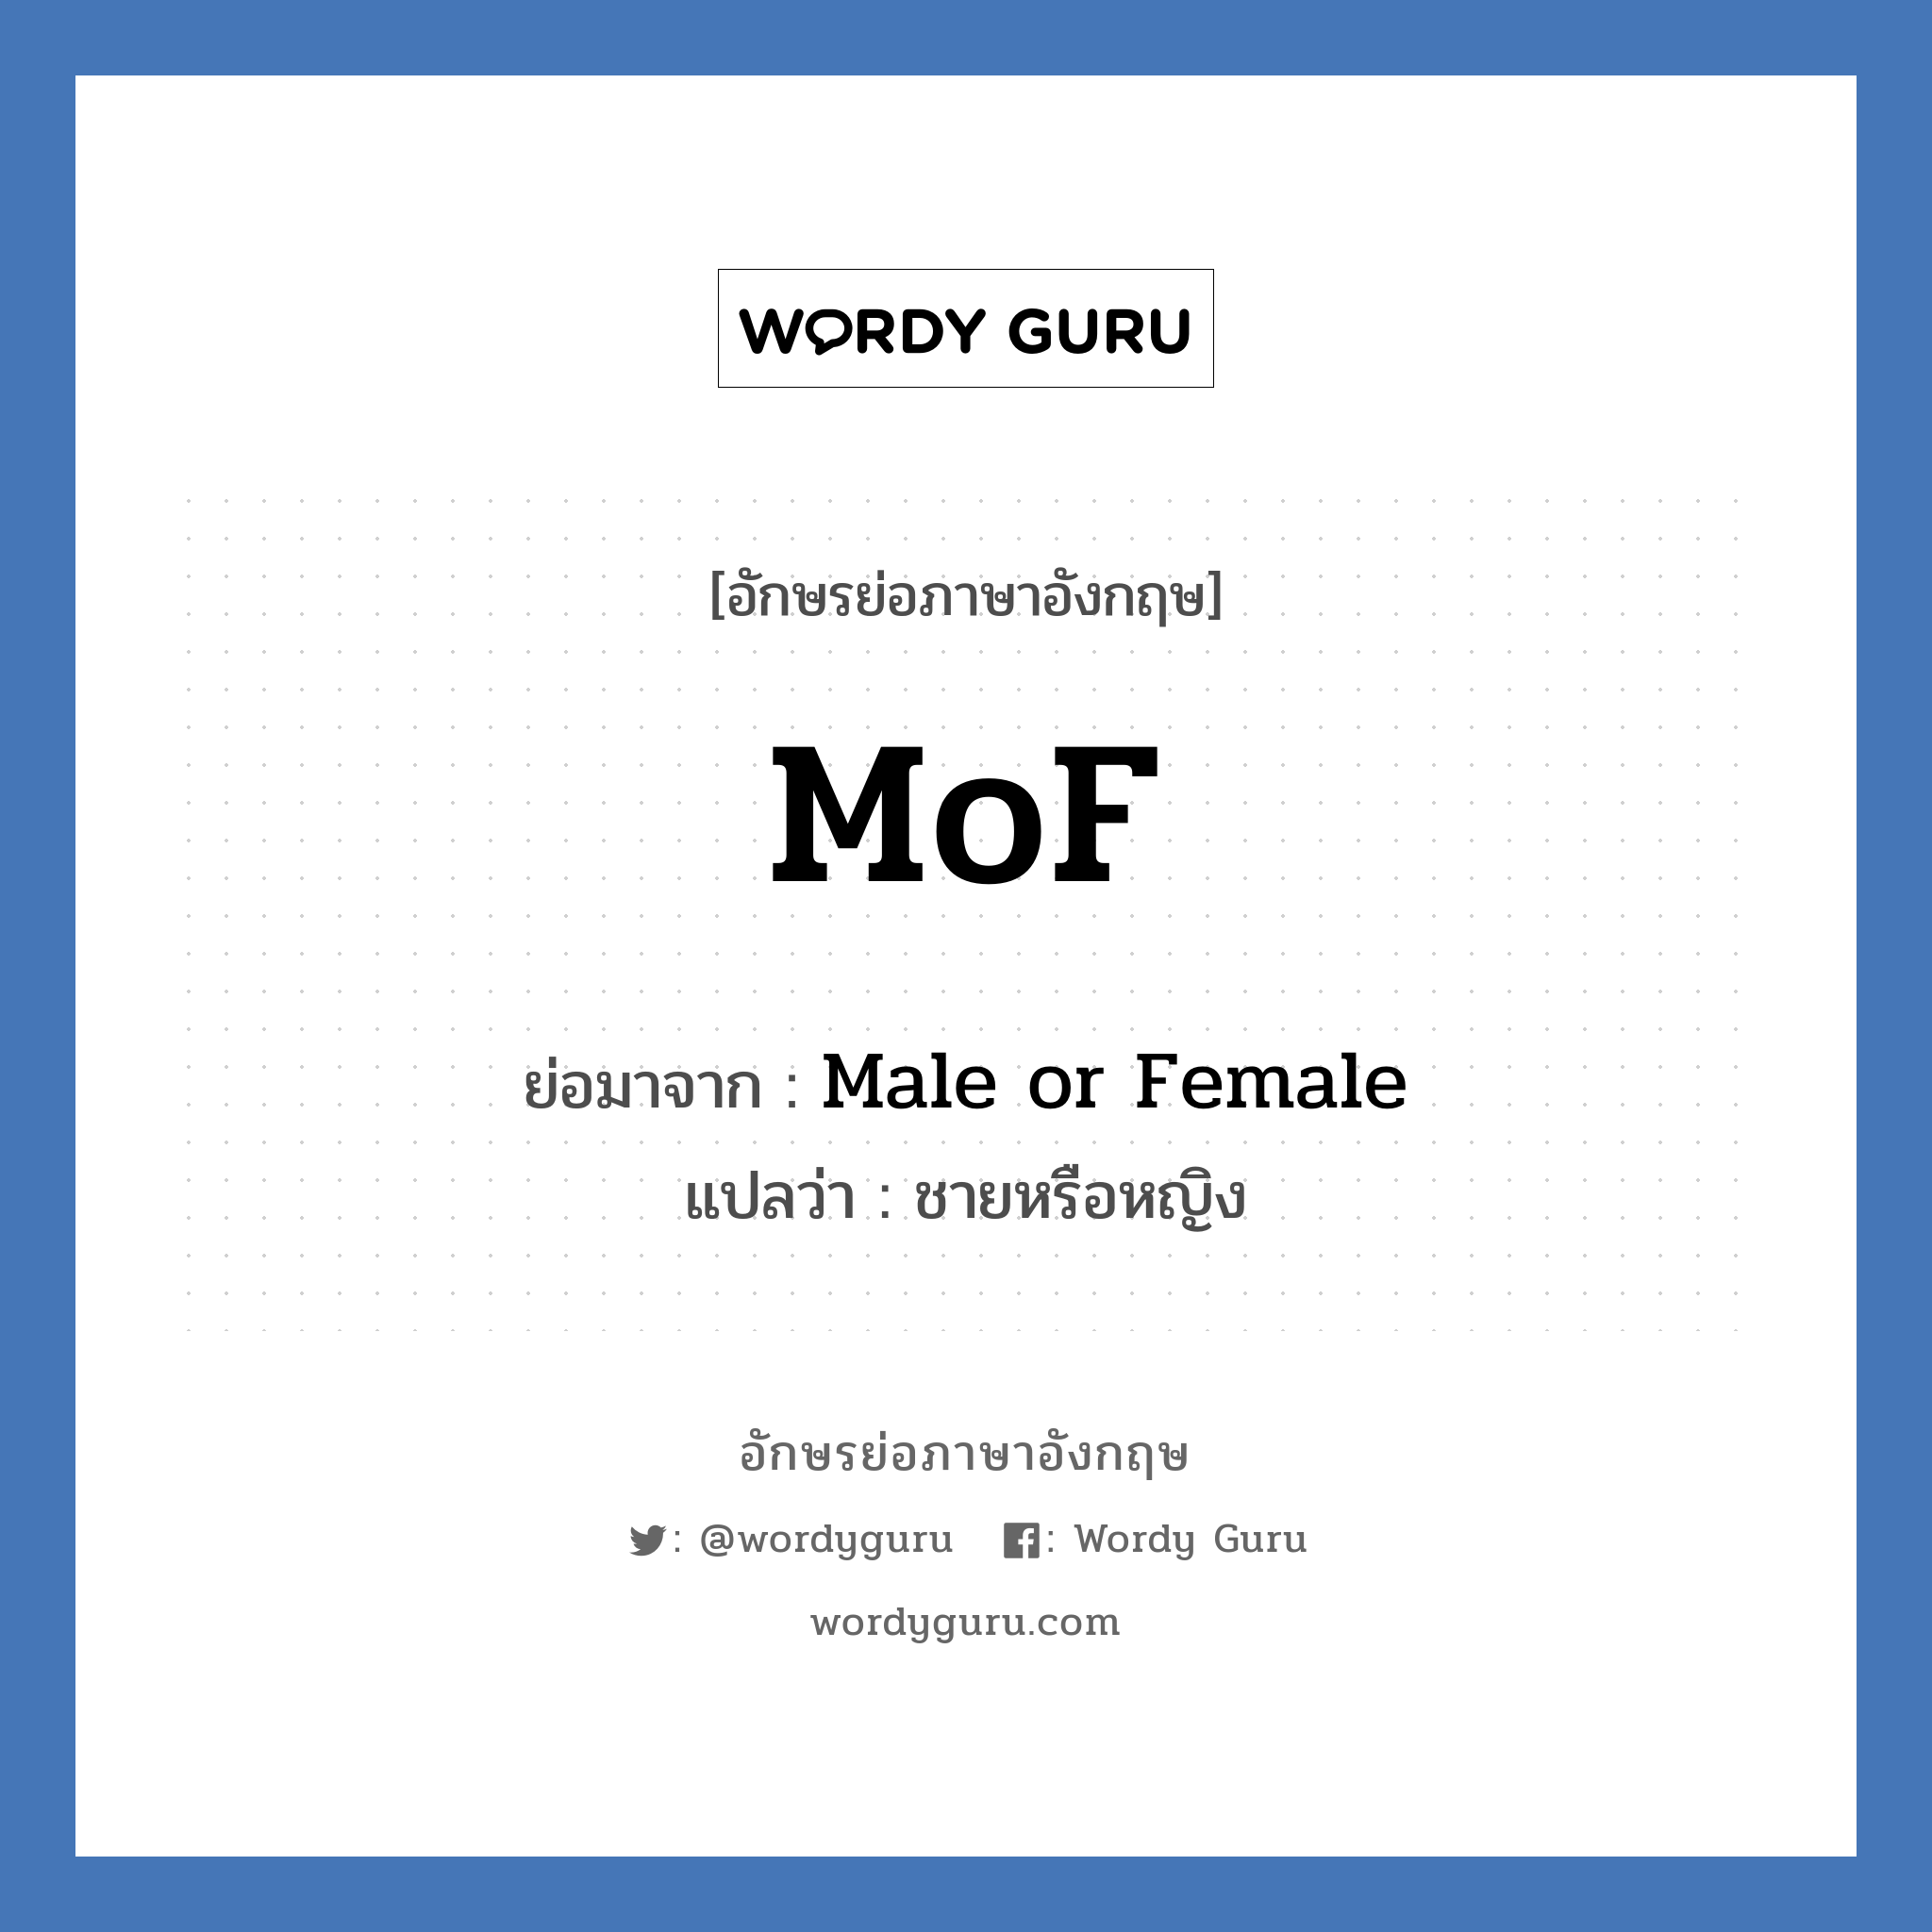 MoF ย่อมาจาก? แปลว่า?, อักษรย่อภาษาอังกฤษ MoF ย่อมาจาก Male or Female แปลว่า ชายหรือหญิง